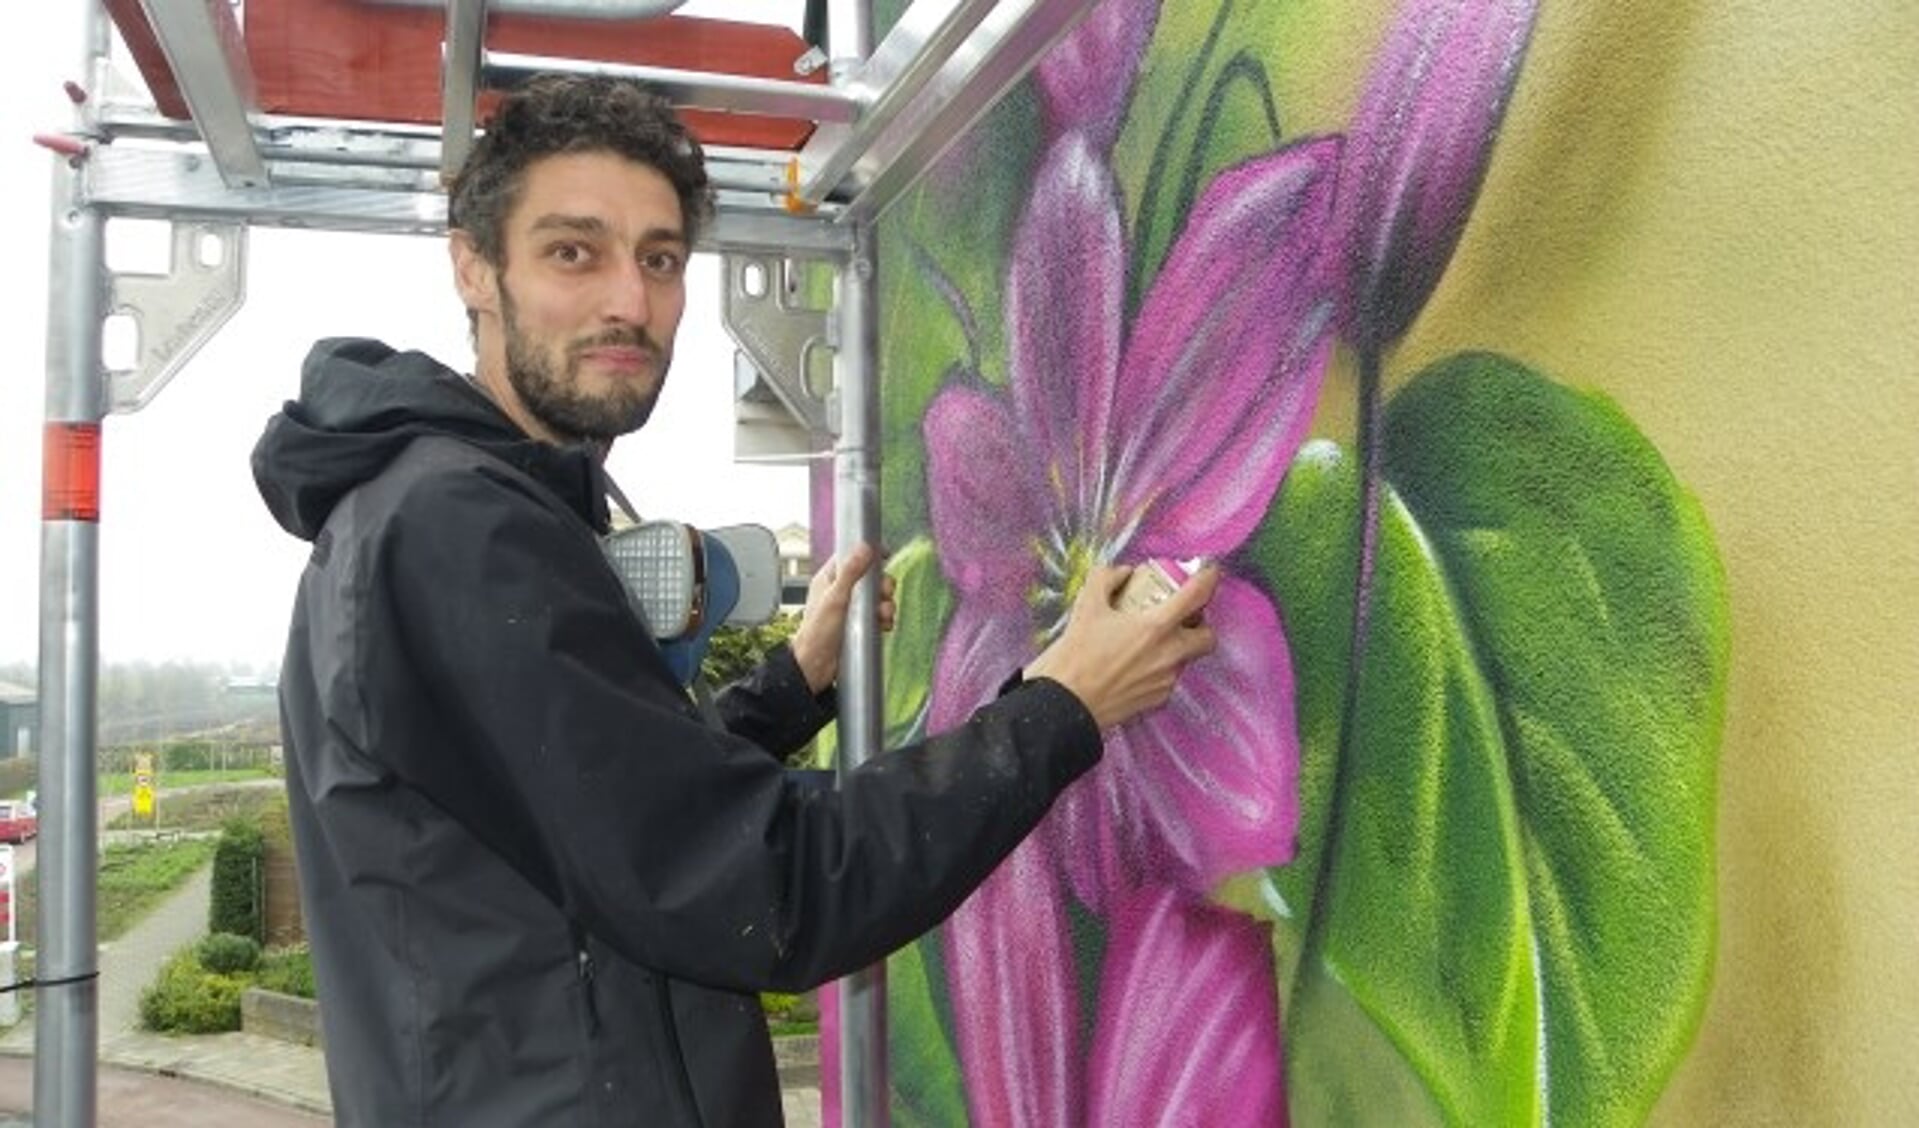 Graffitikunstenaar Joost Zwanenburg fleurt Boskoop op met een schildering van enorme clematisbloemen. Sinds vier jaar woont hij in Amsterdam, maar hij komt gedeeltelijk terug. 